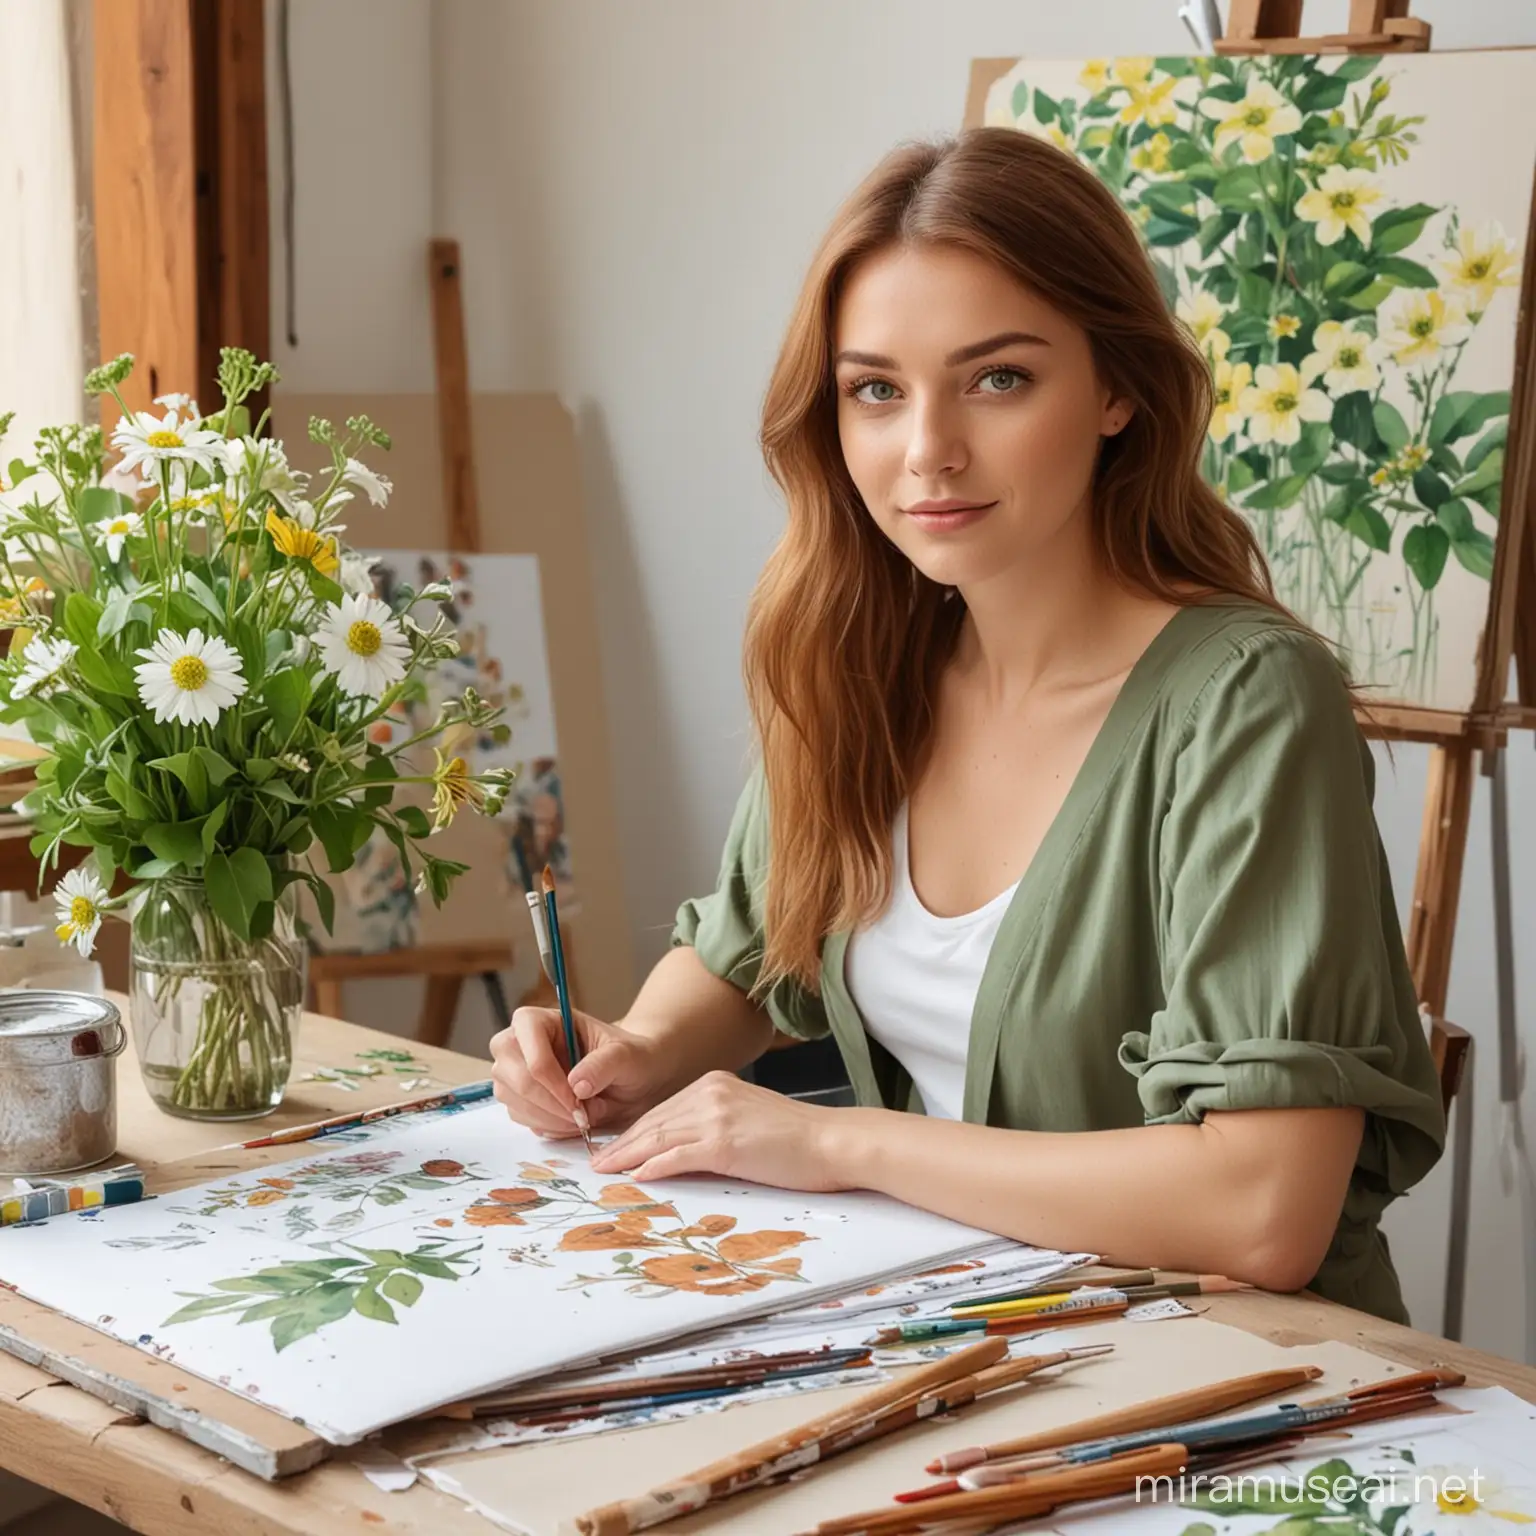 экстерьер дизайн студии, картины, цветы, учитель рисования сидит за столом, красивая женщина, зеленые глаза, волосы каштановые средней длины.